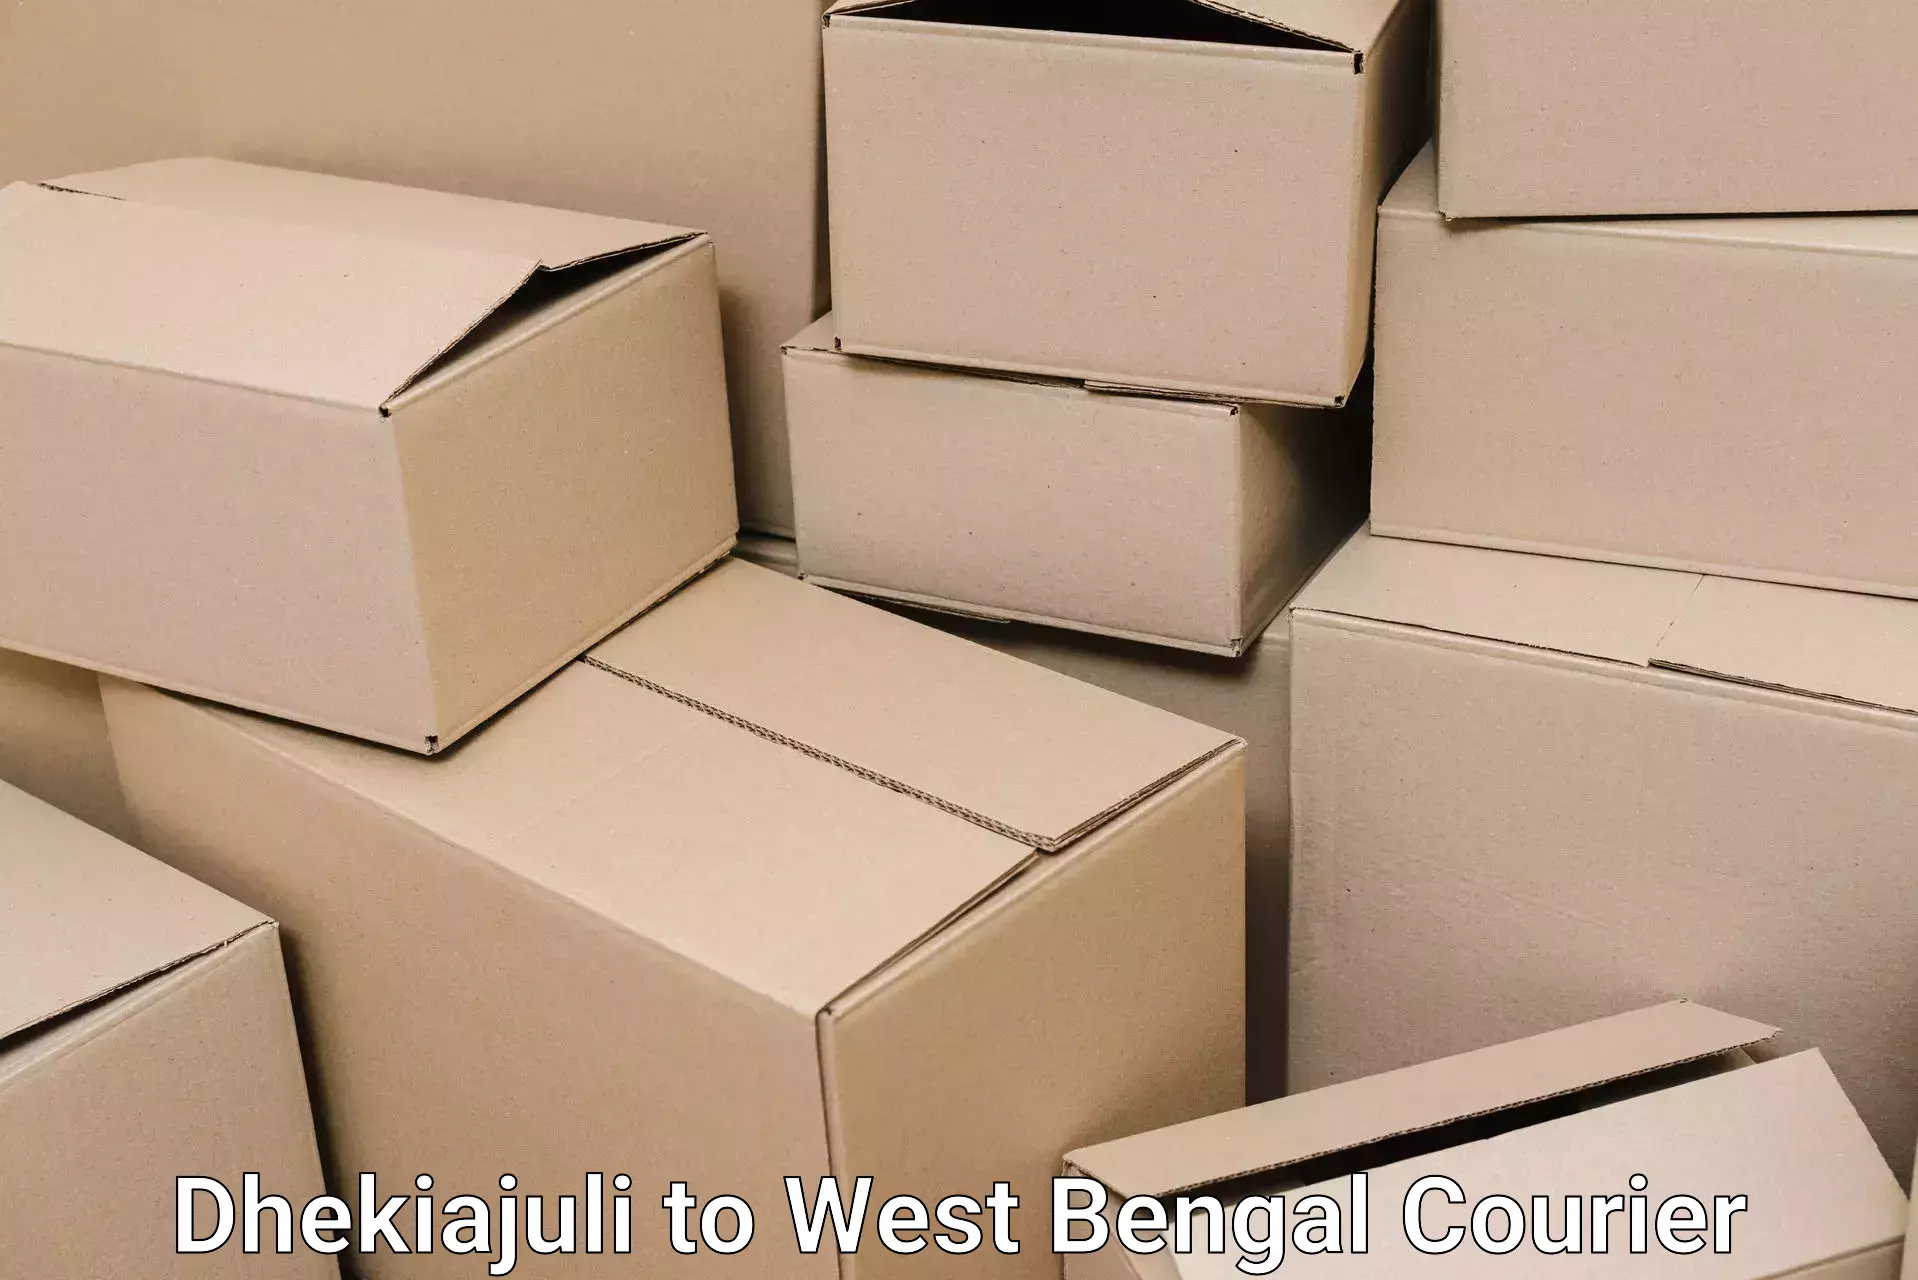 Efficient moving company in Dhekiajuli to Maheshtala